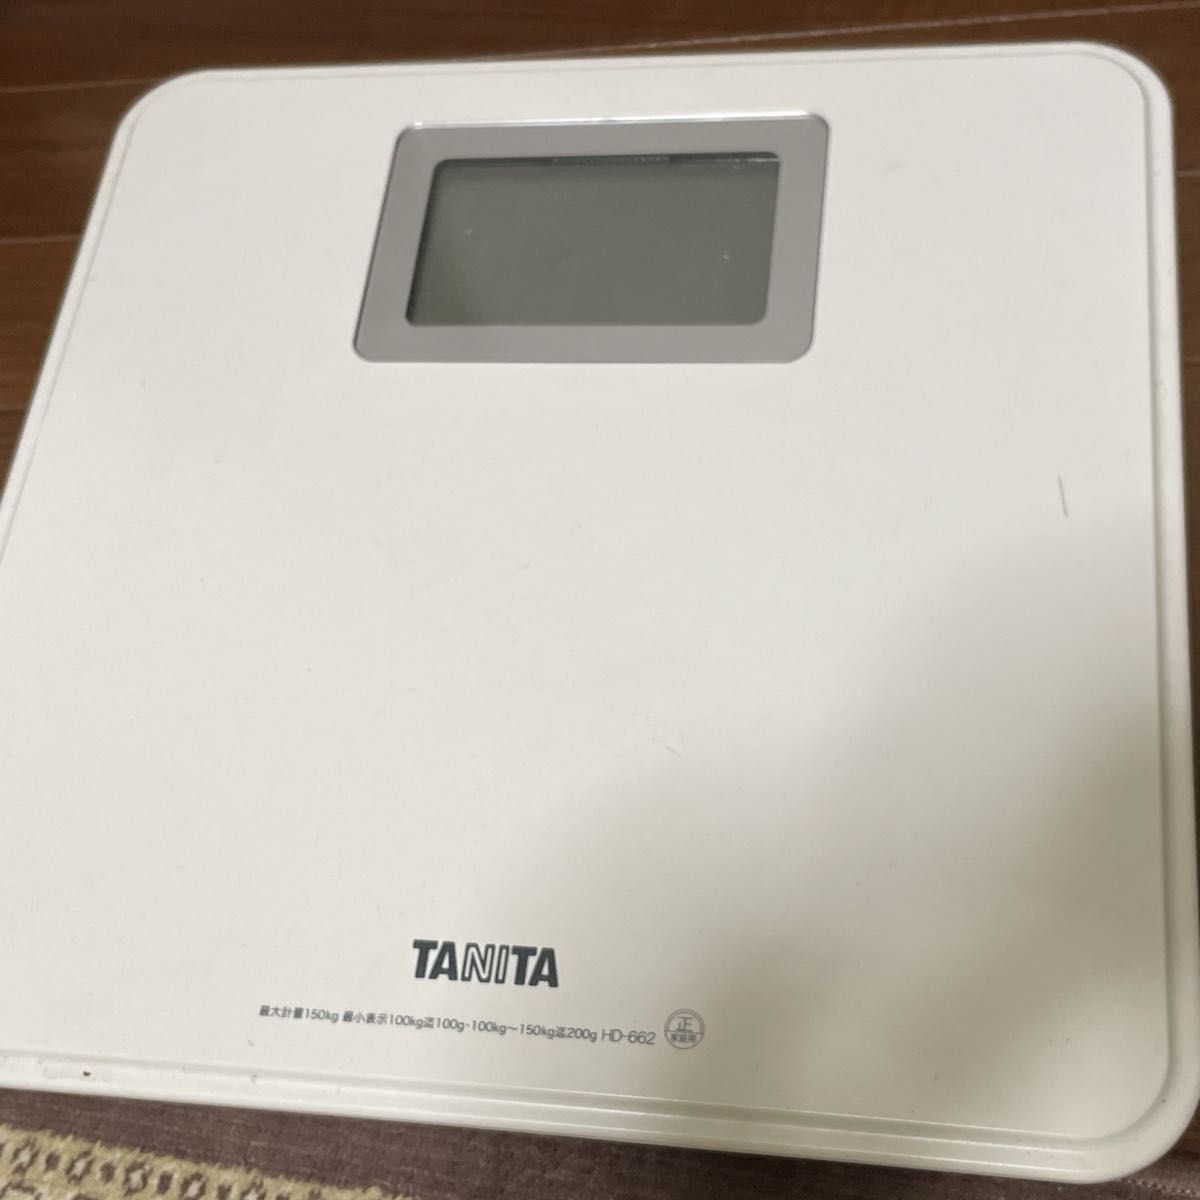 タニタ 体重計 小型 ホワイト HD-662-WH